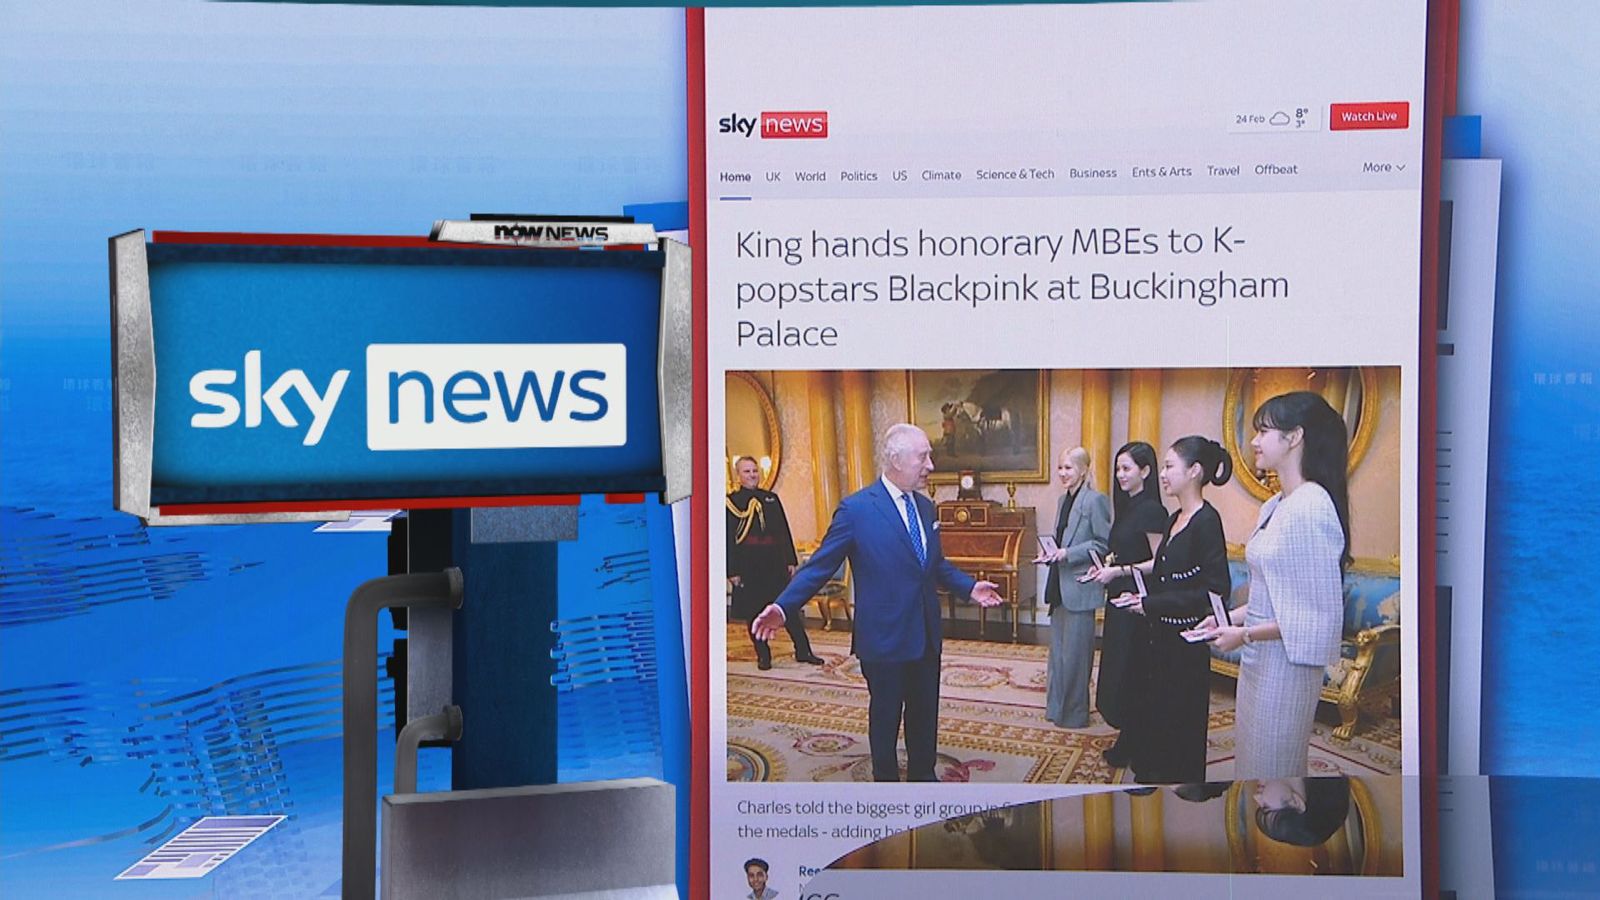 【環球薈報】Blackpink獲英王頒發MBE勳章表揚對氣候變化大會貢獻